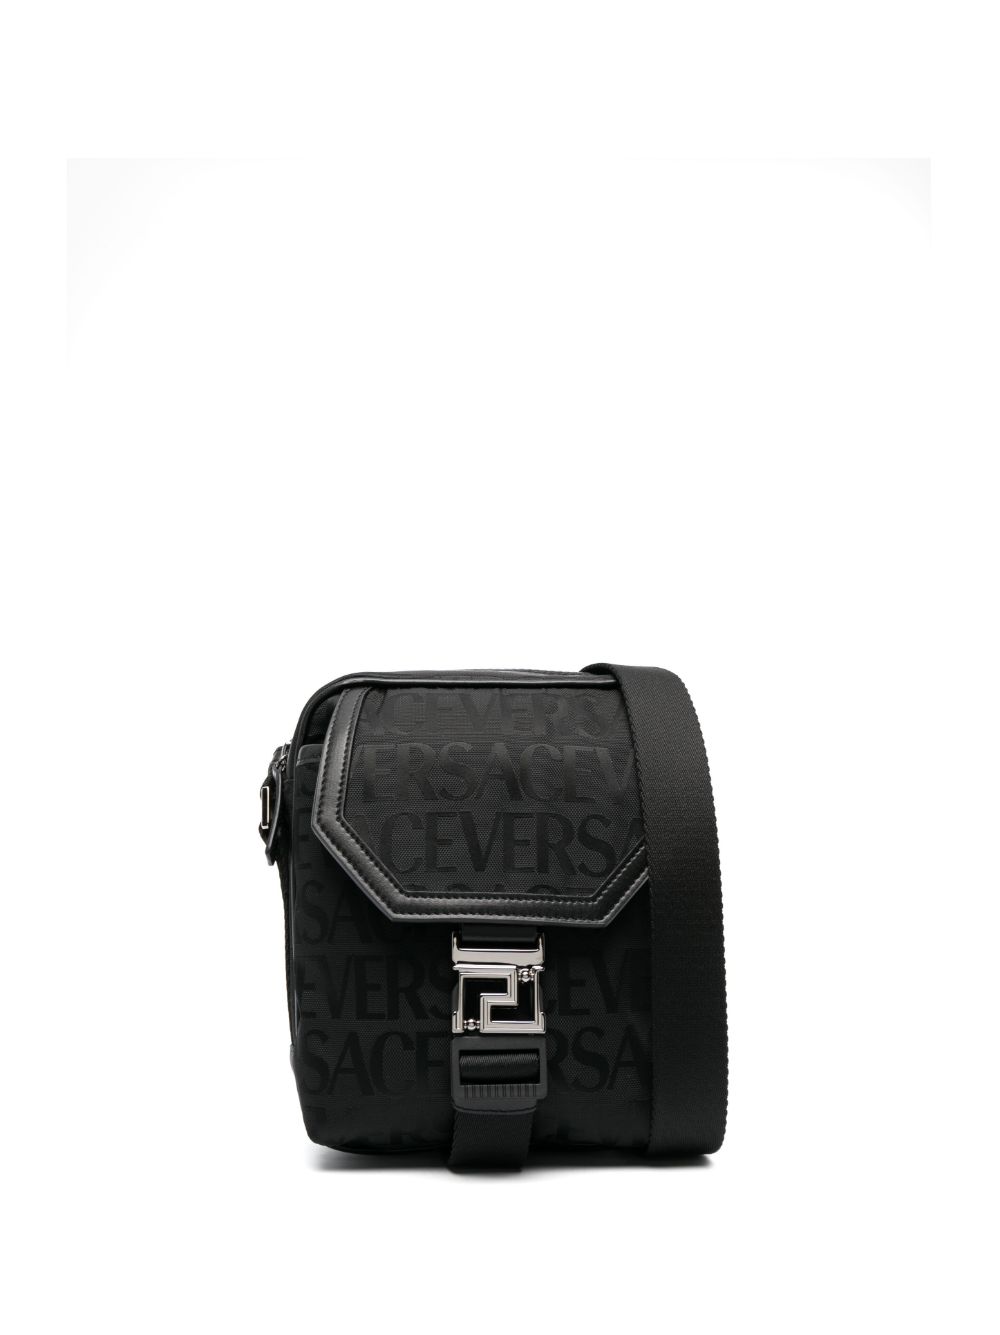 Versace VERSACE- Logo Messenger Bag